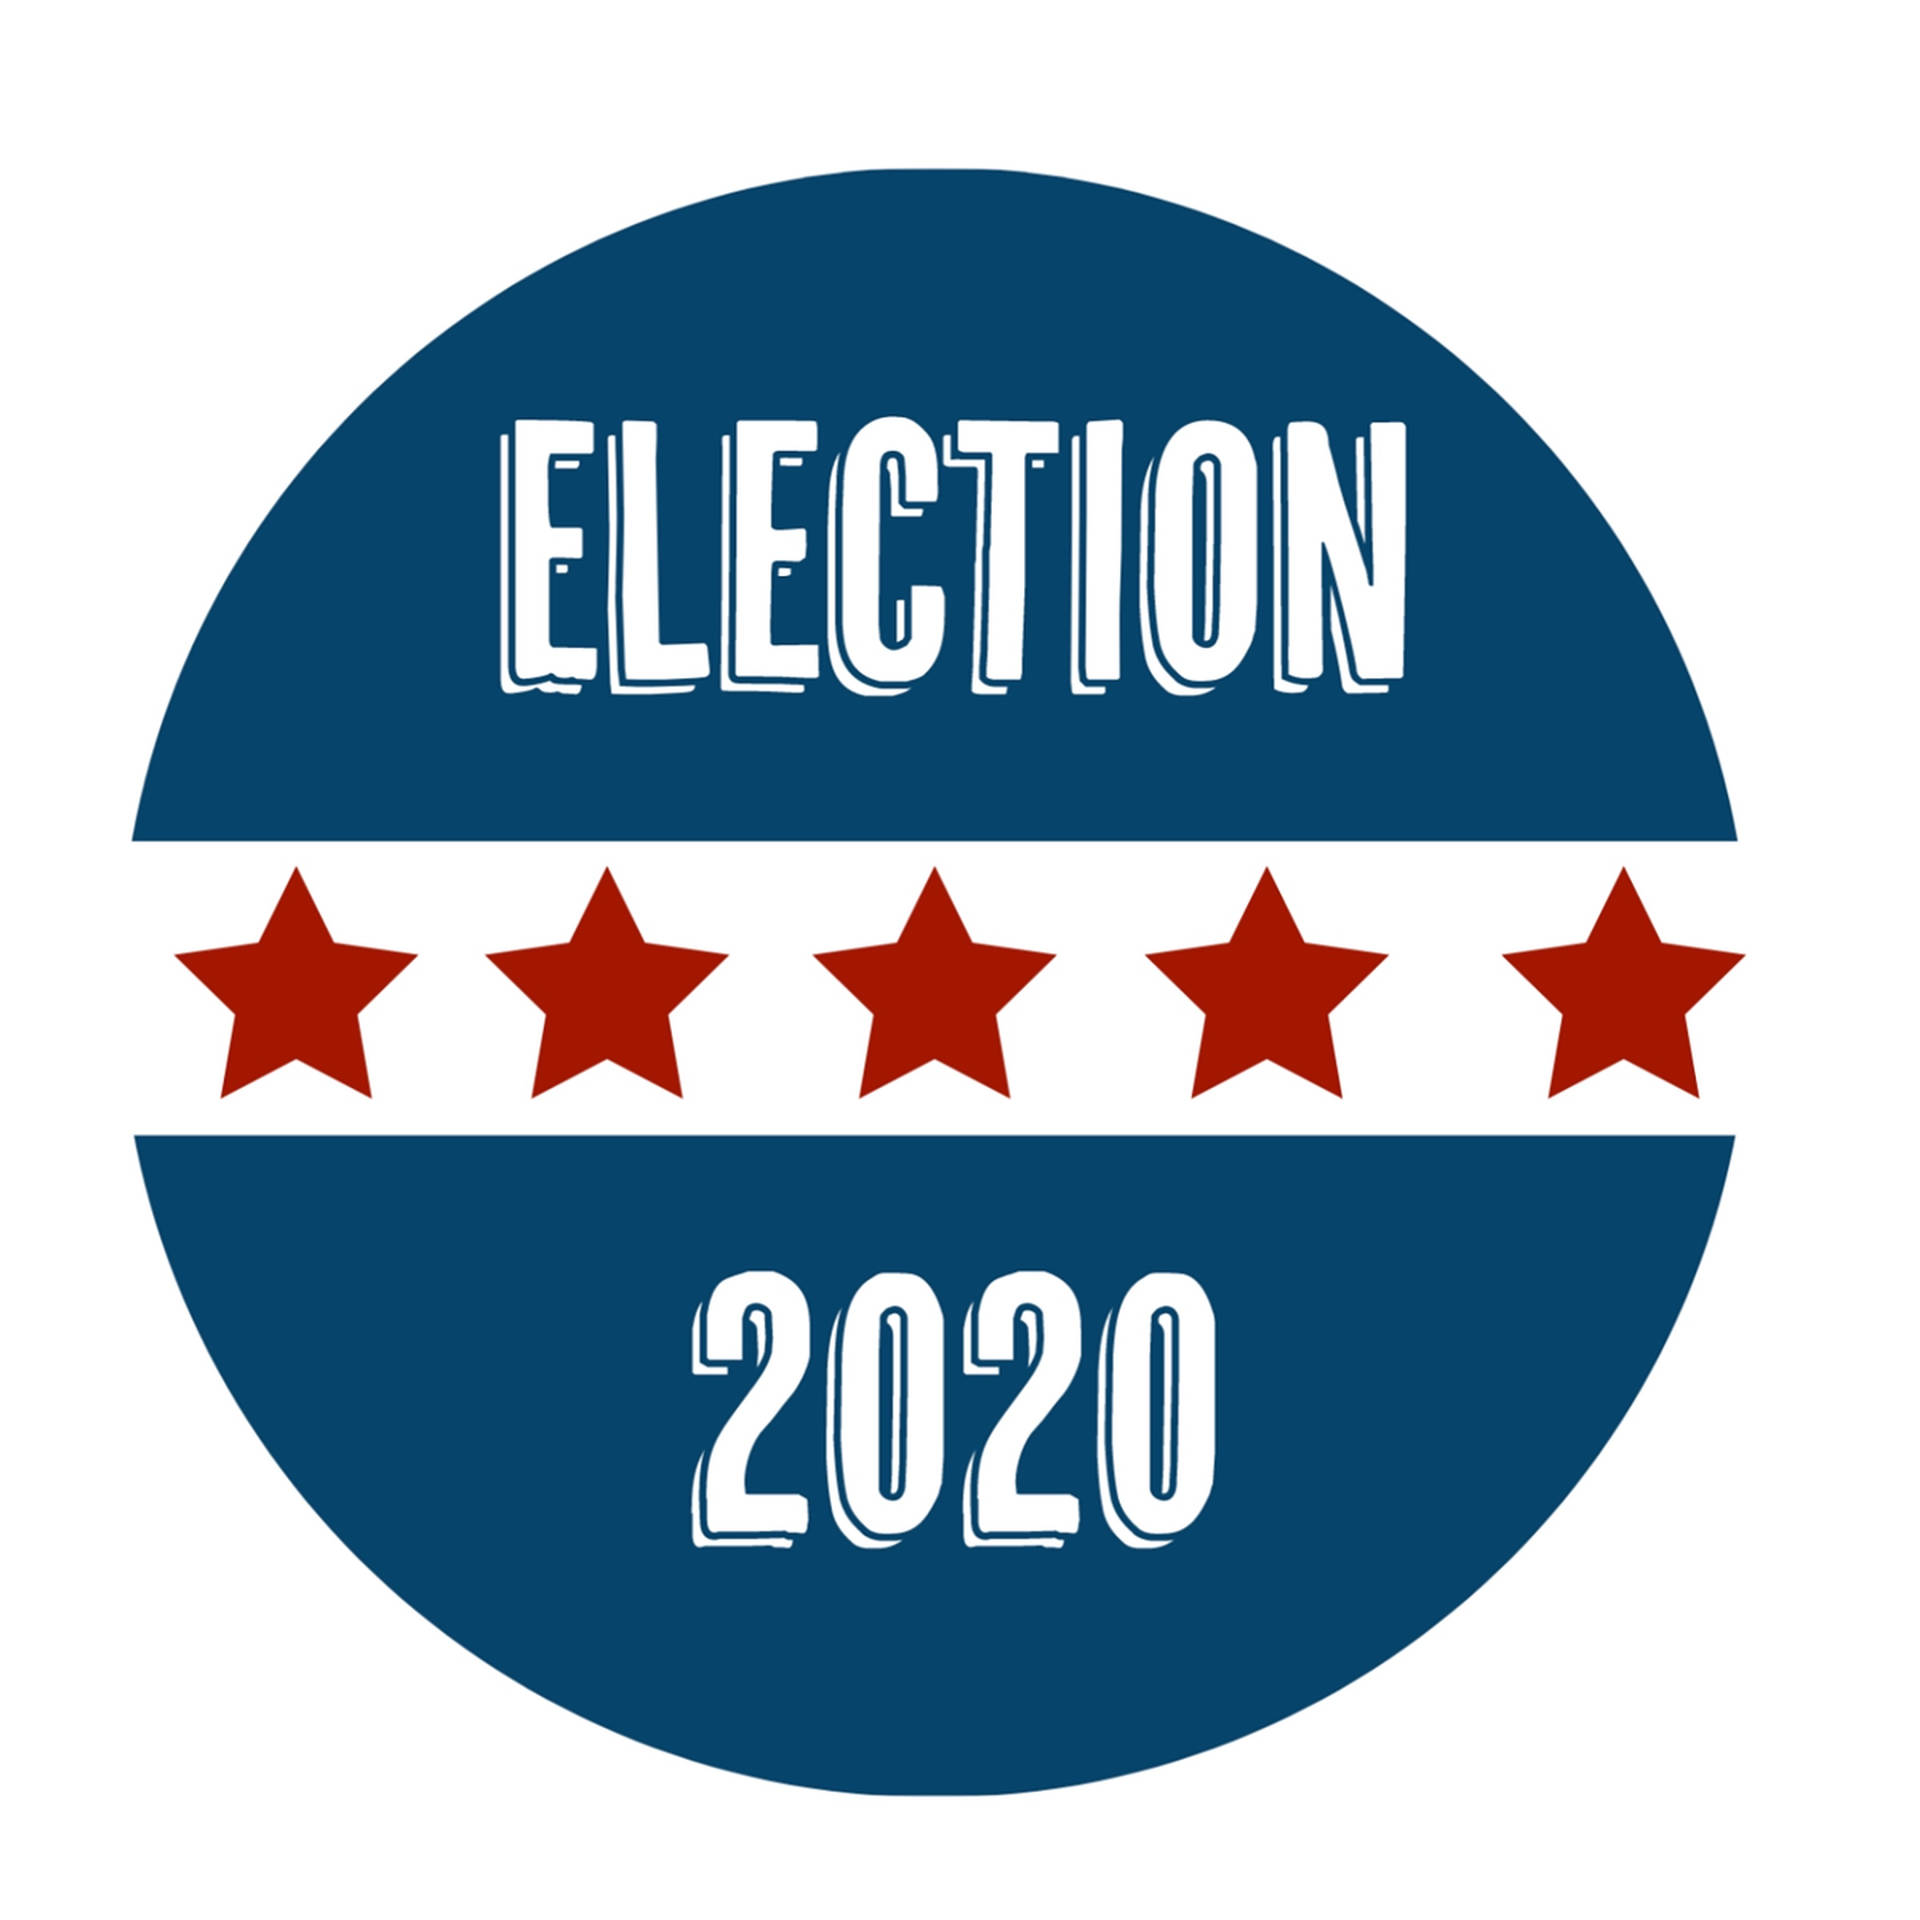 Election 2020 Sticker Background